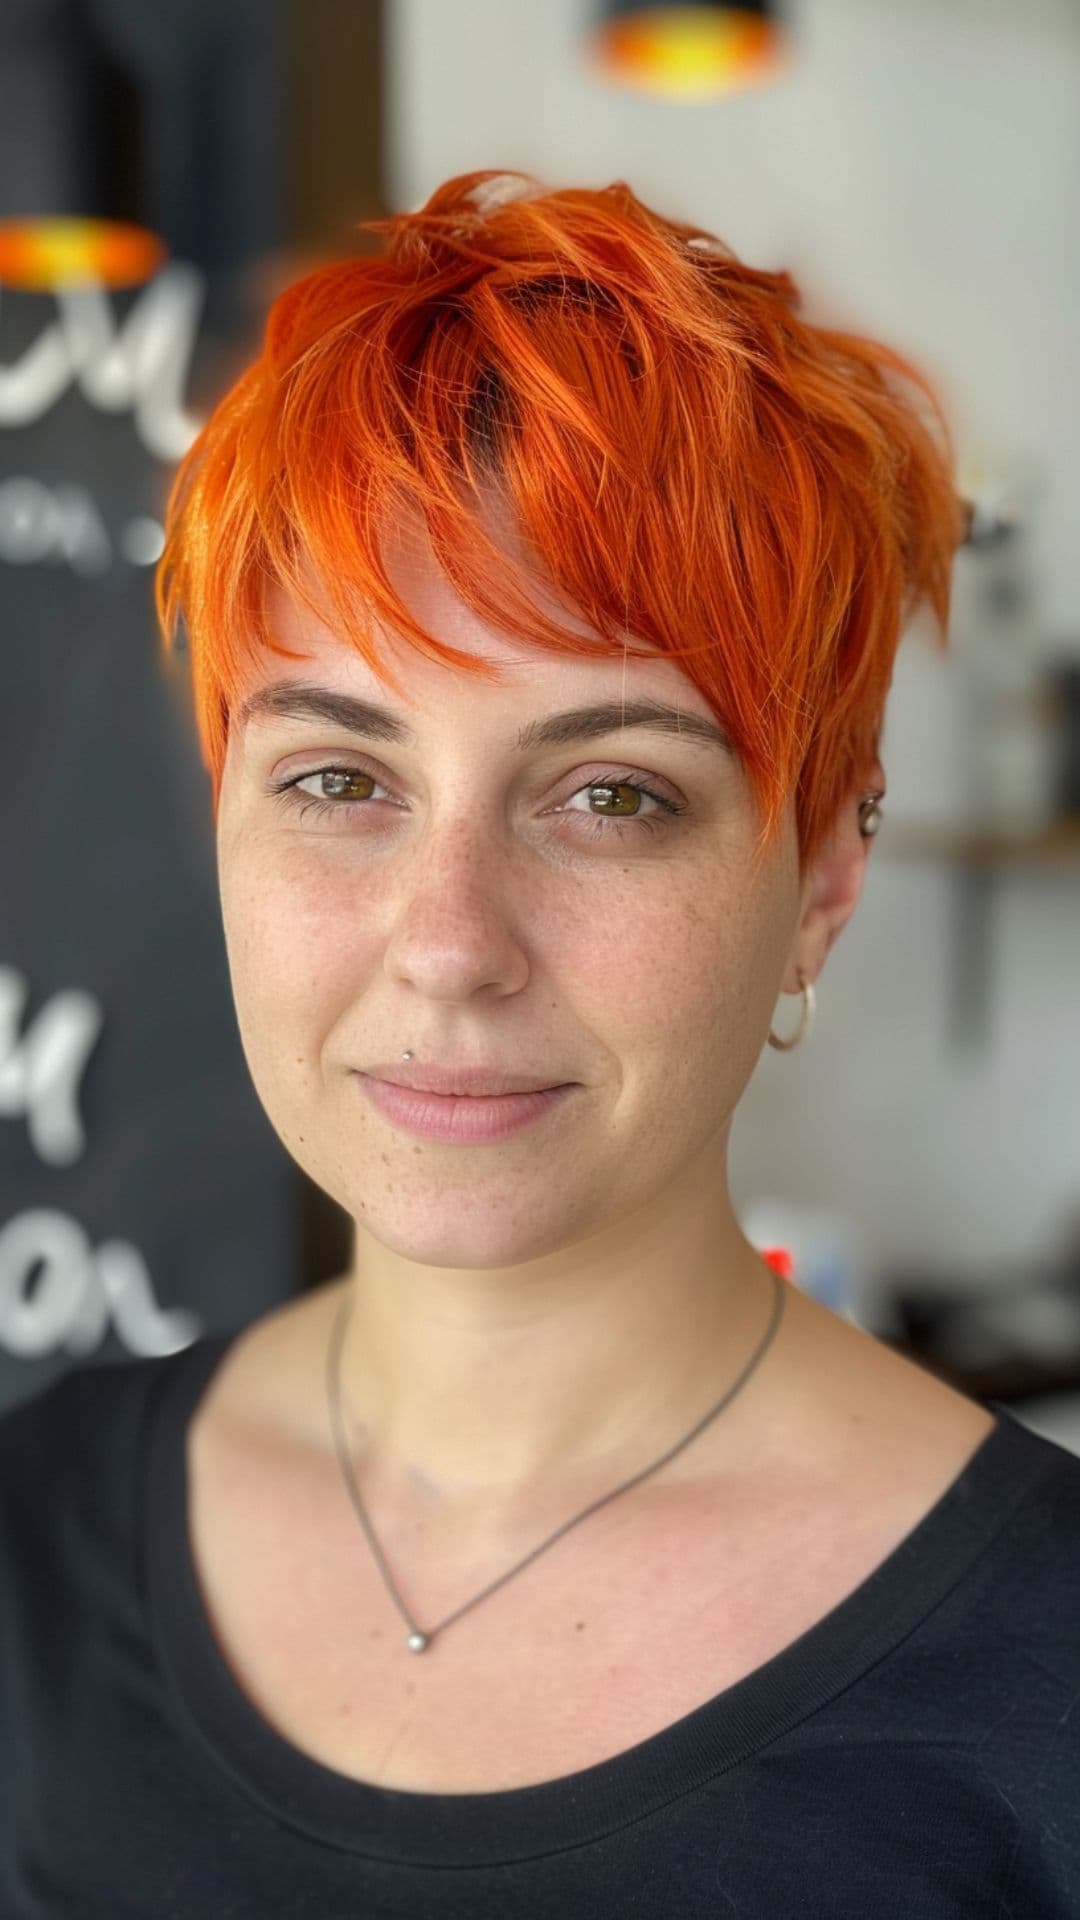 A woman modelling an orange pixie cut.